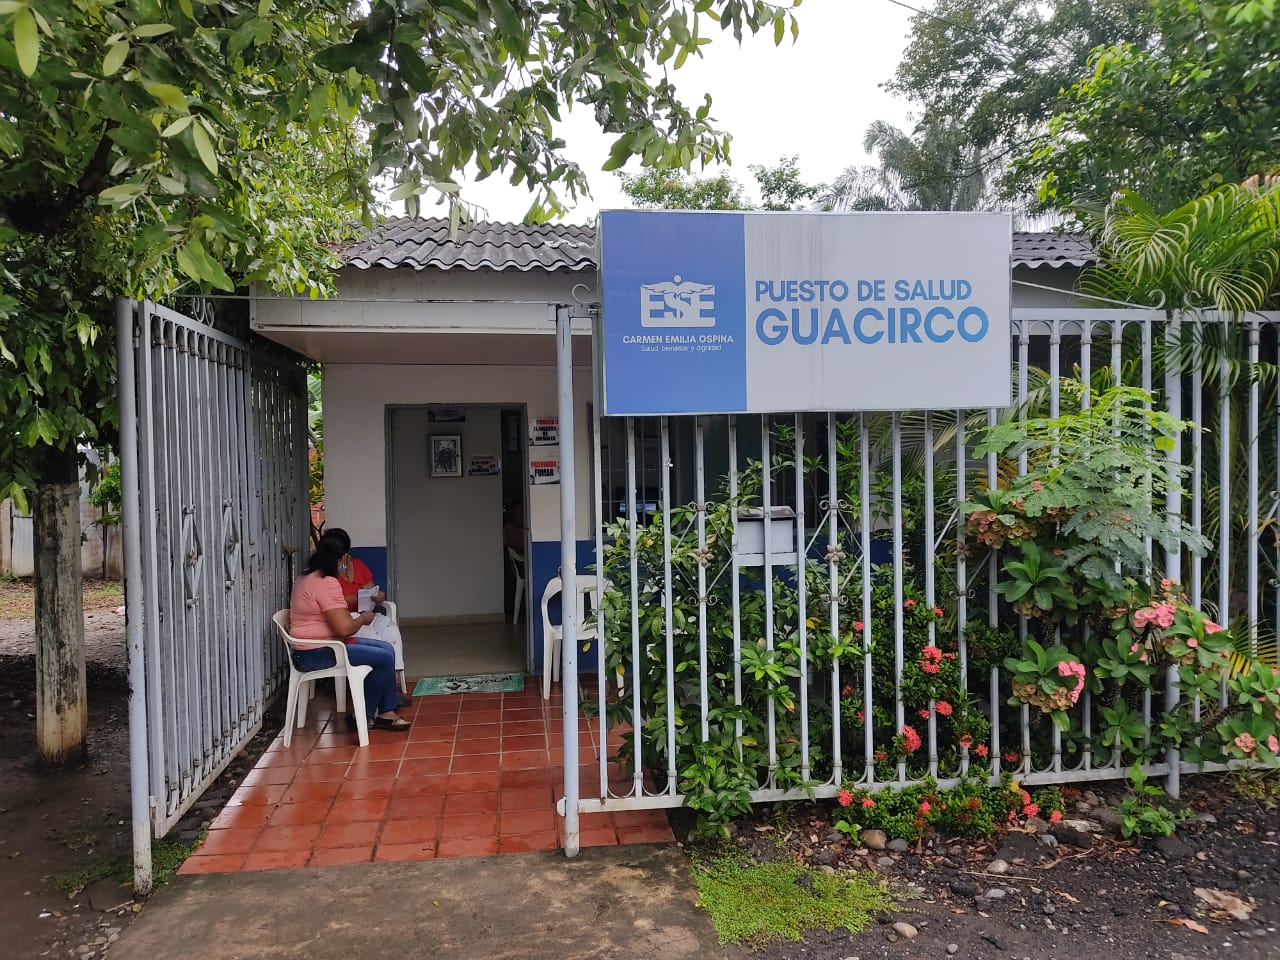 En el puesto de salud de Guacirco se llevó a cabo la brigada de salud de la ESE Carmen Emilia Ospina.